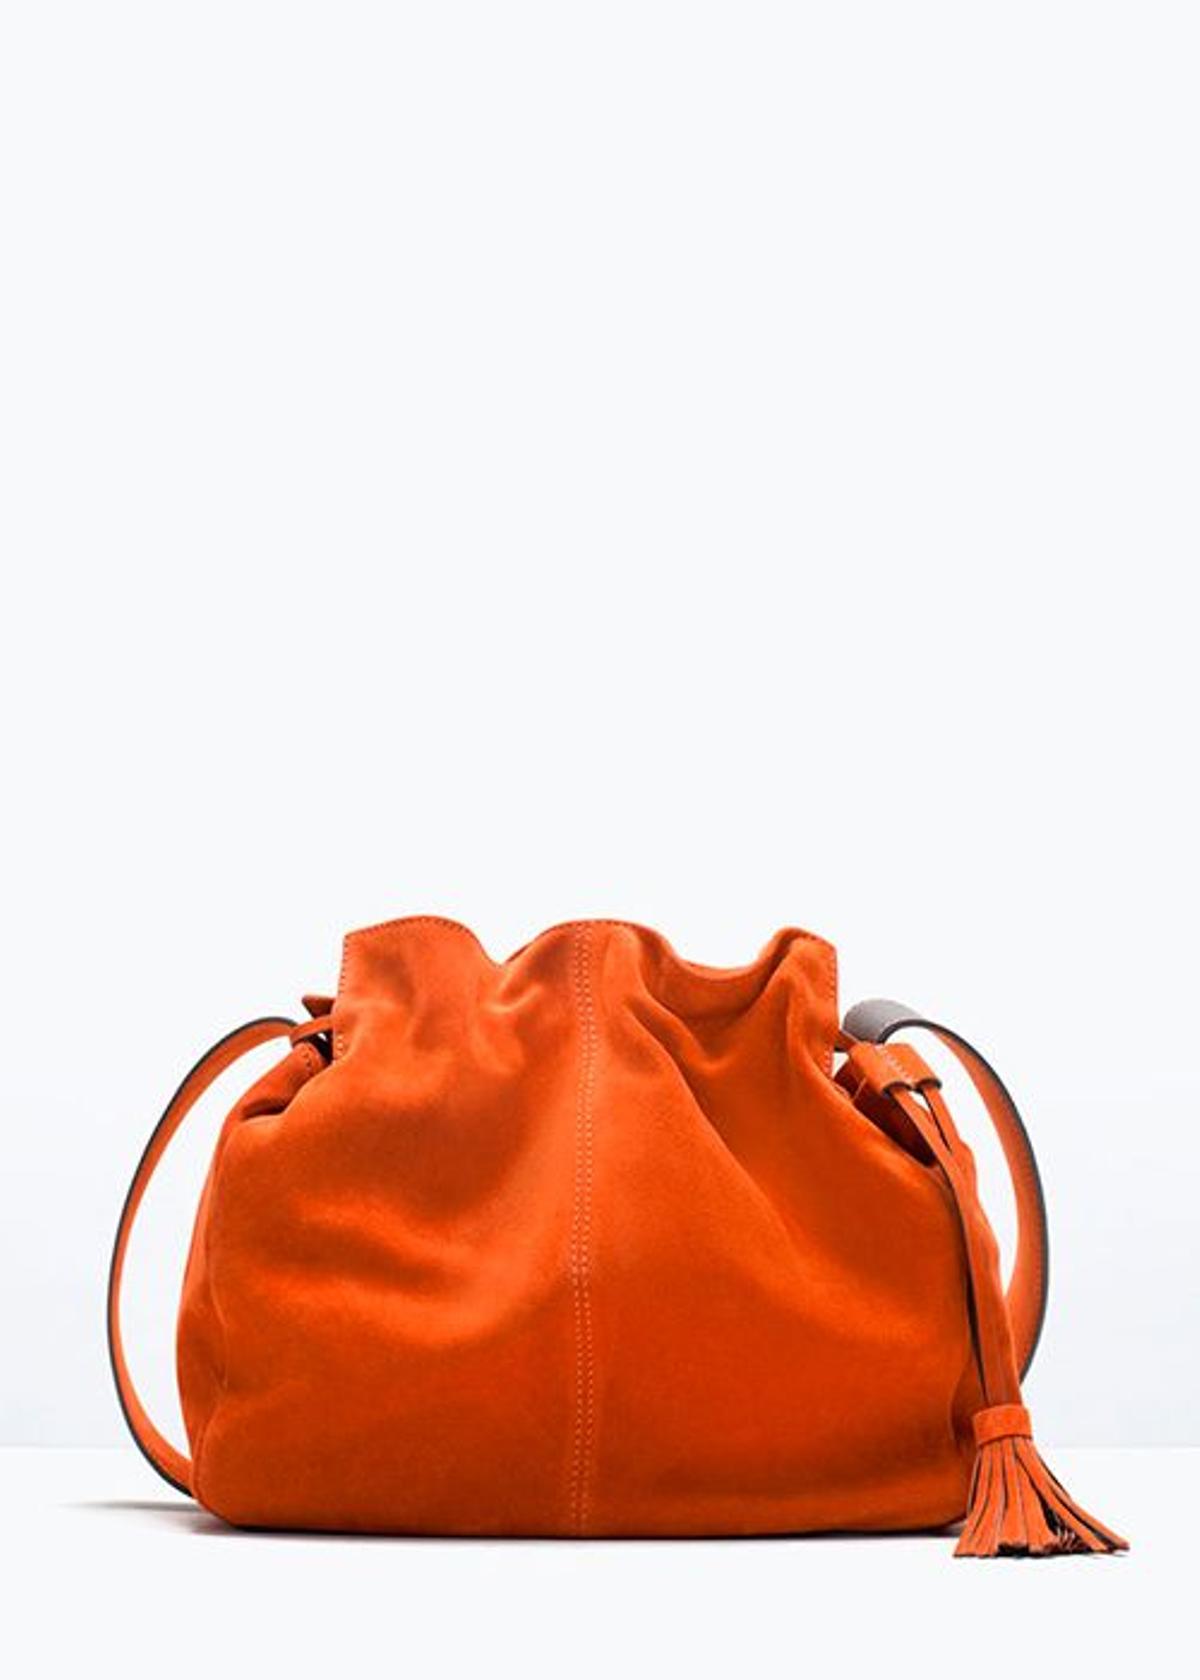 Bombonera de piel naranja con borla de Zara (39,99€)